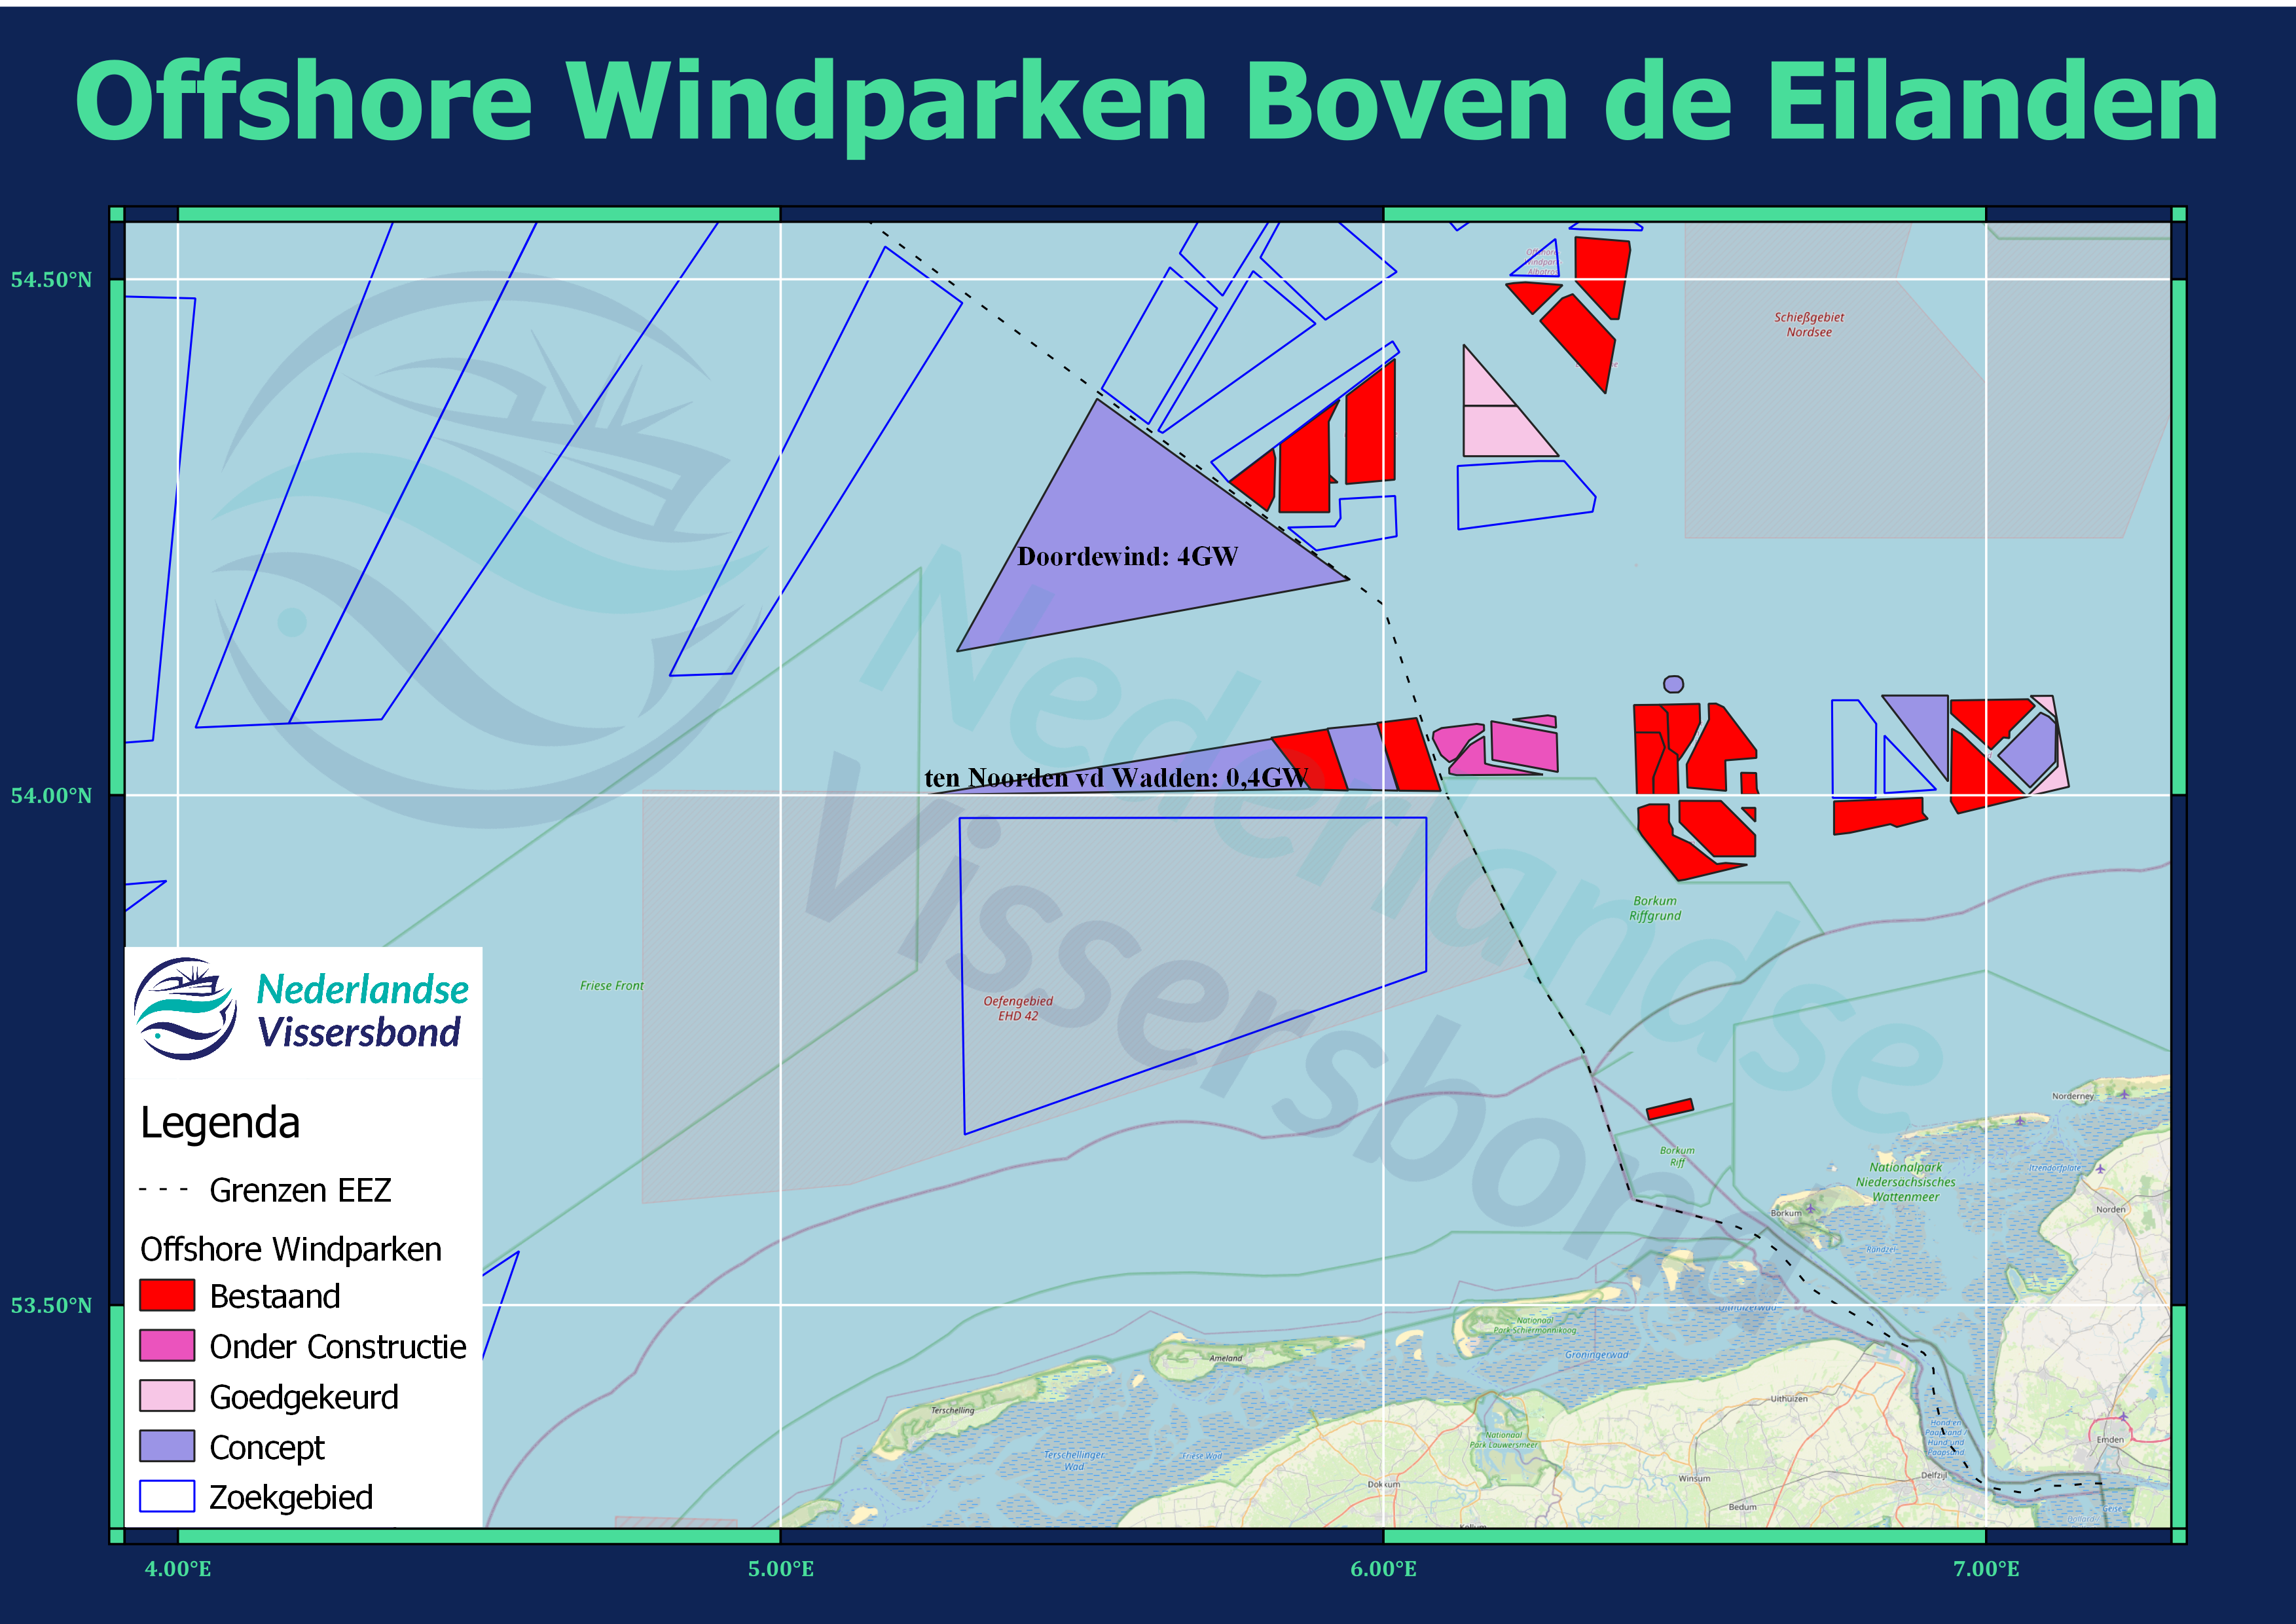 Offshore Windparken boven de Eilanden